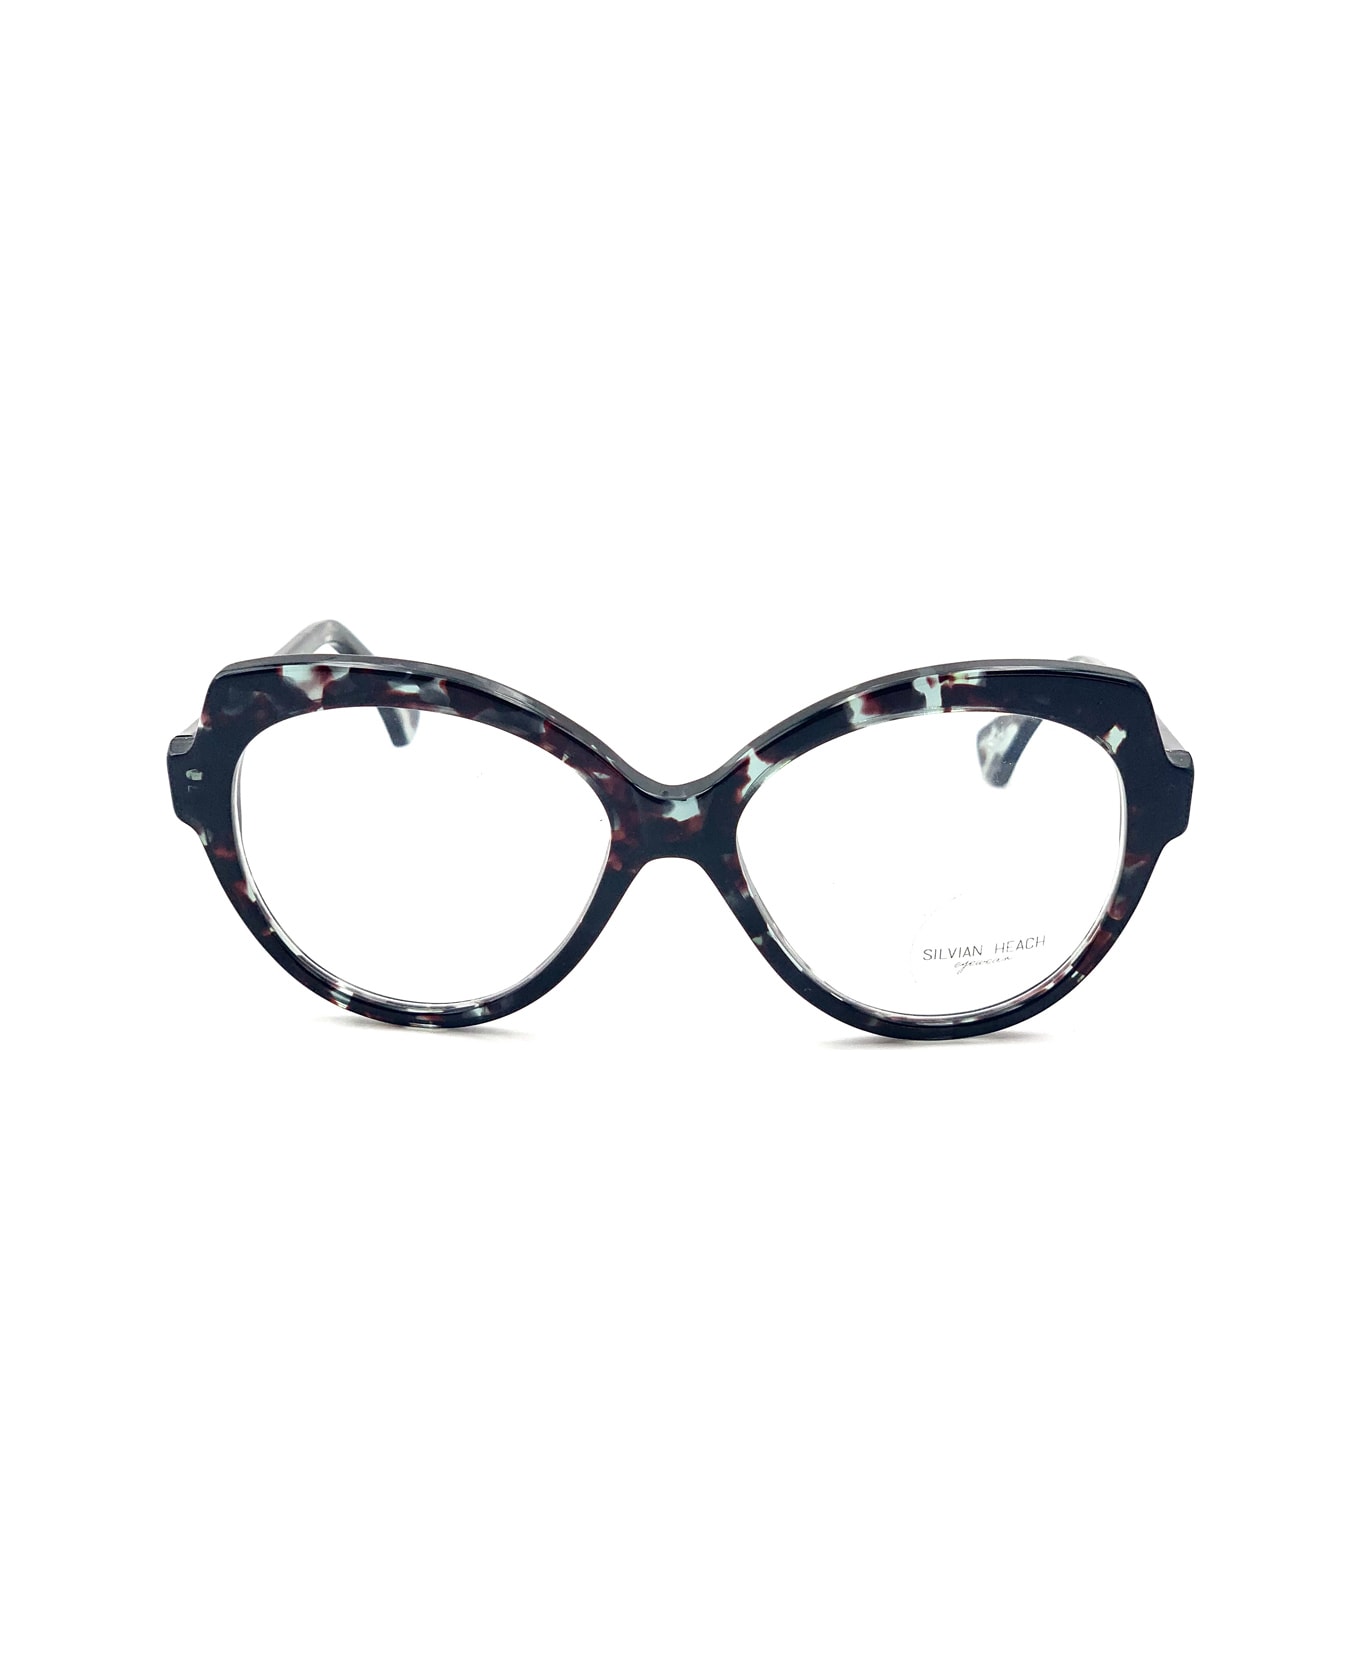 Silvian Heach Cosmopolitan Glasses - Nero